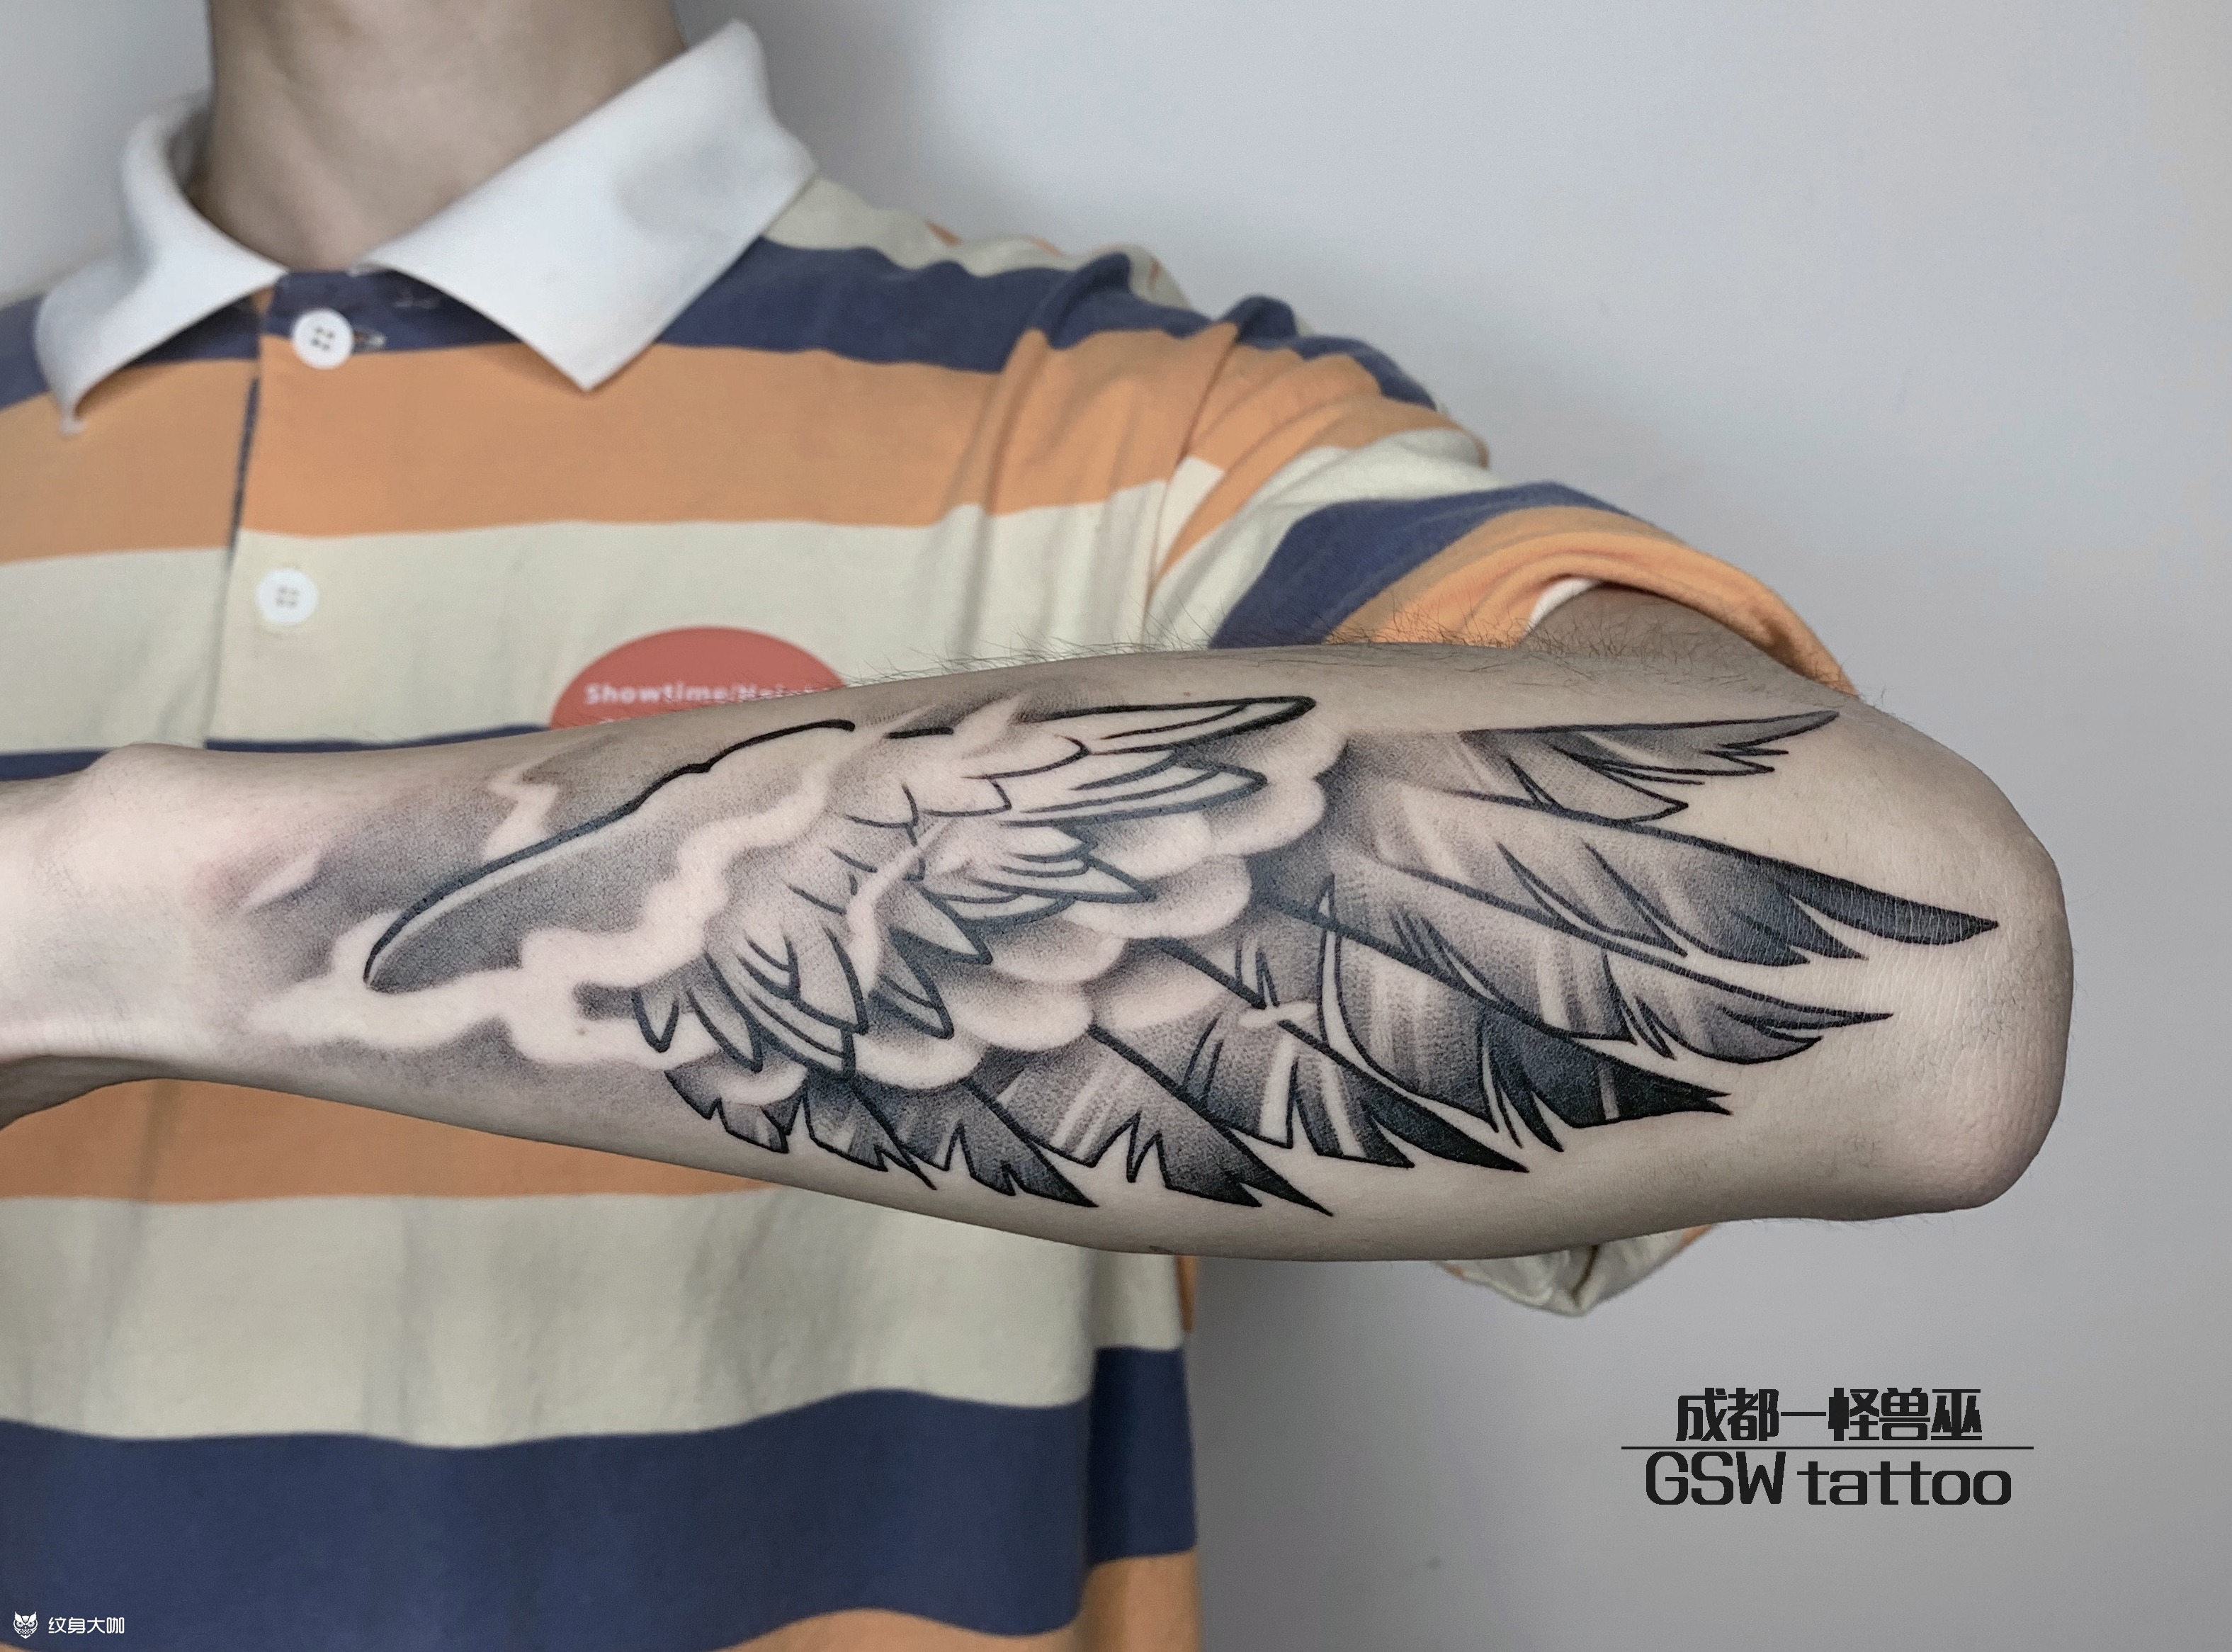 后背天使翅膀英文字母纹身图案-上海纹彩刺青